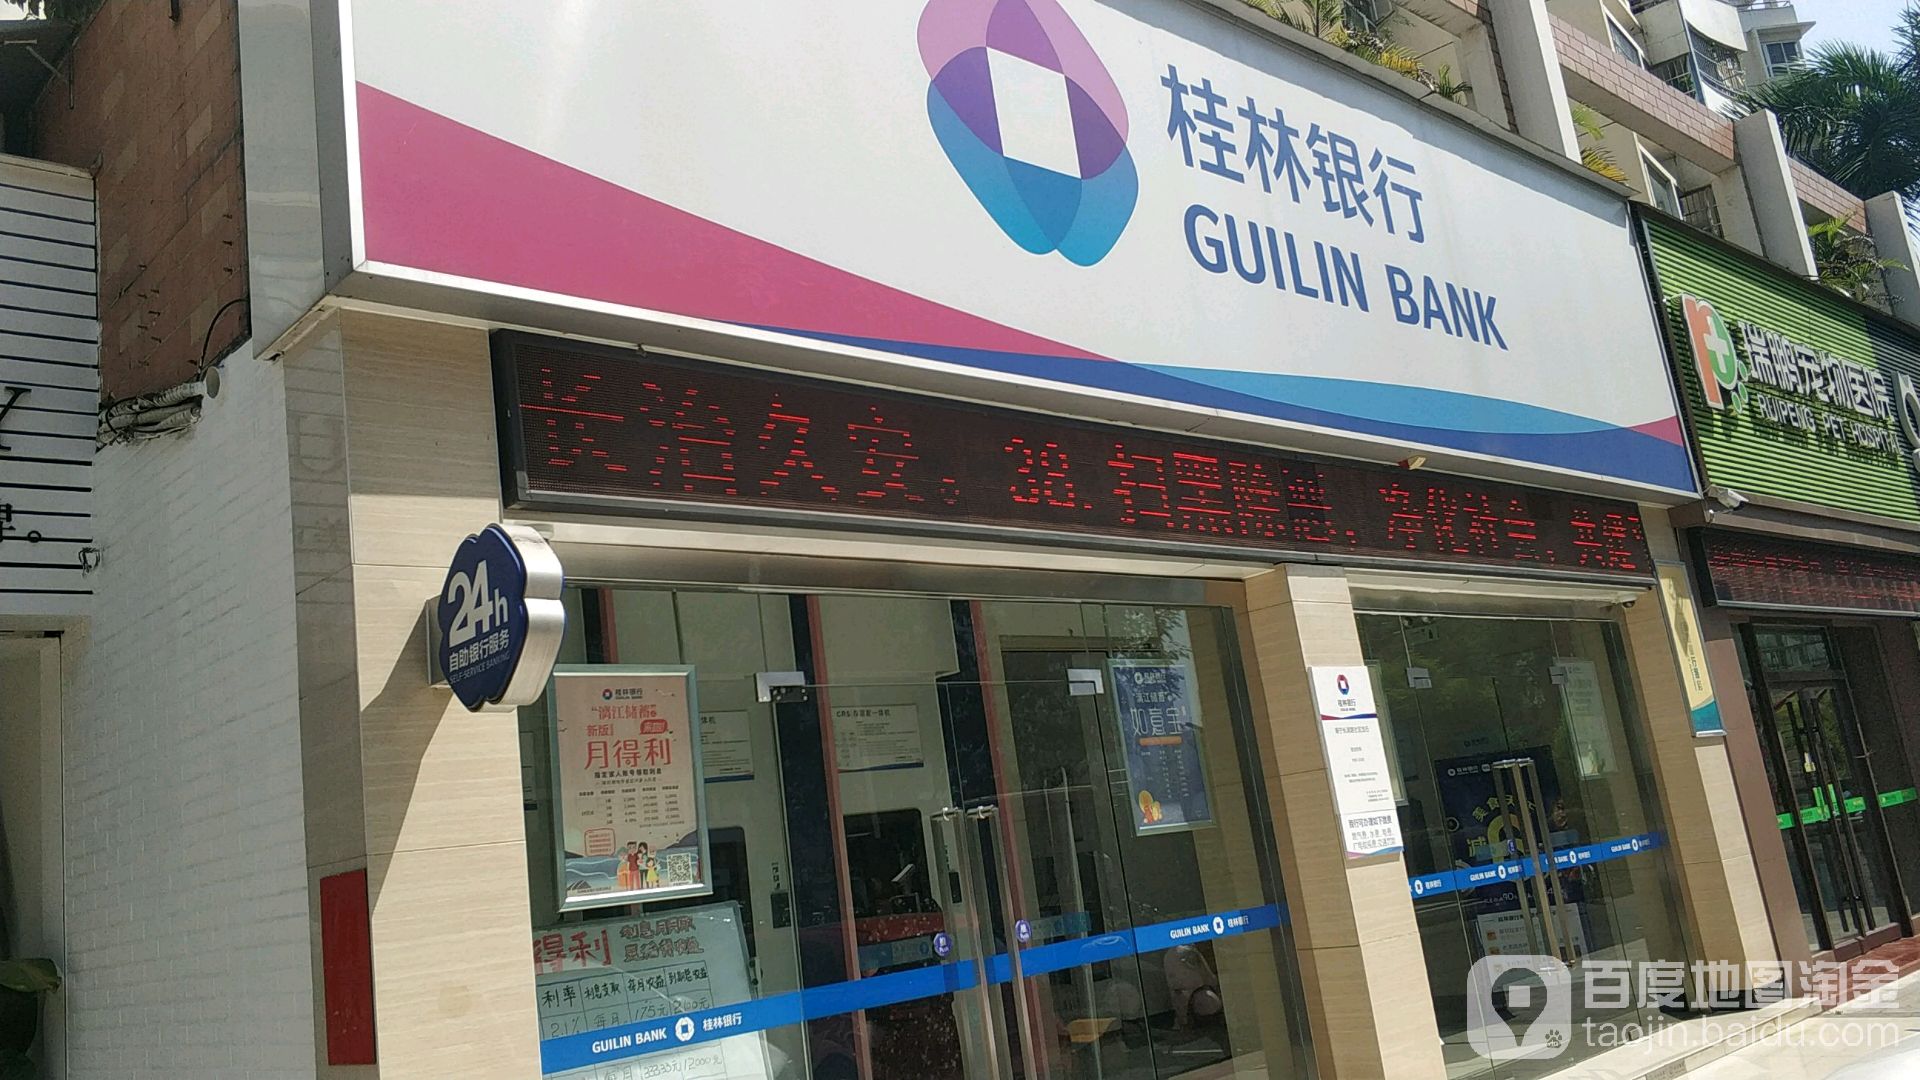 桂林银行24小时自助银行(长湖路)